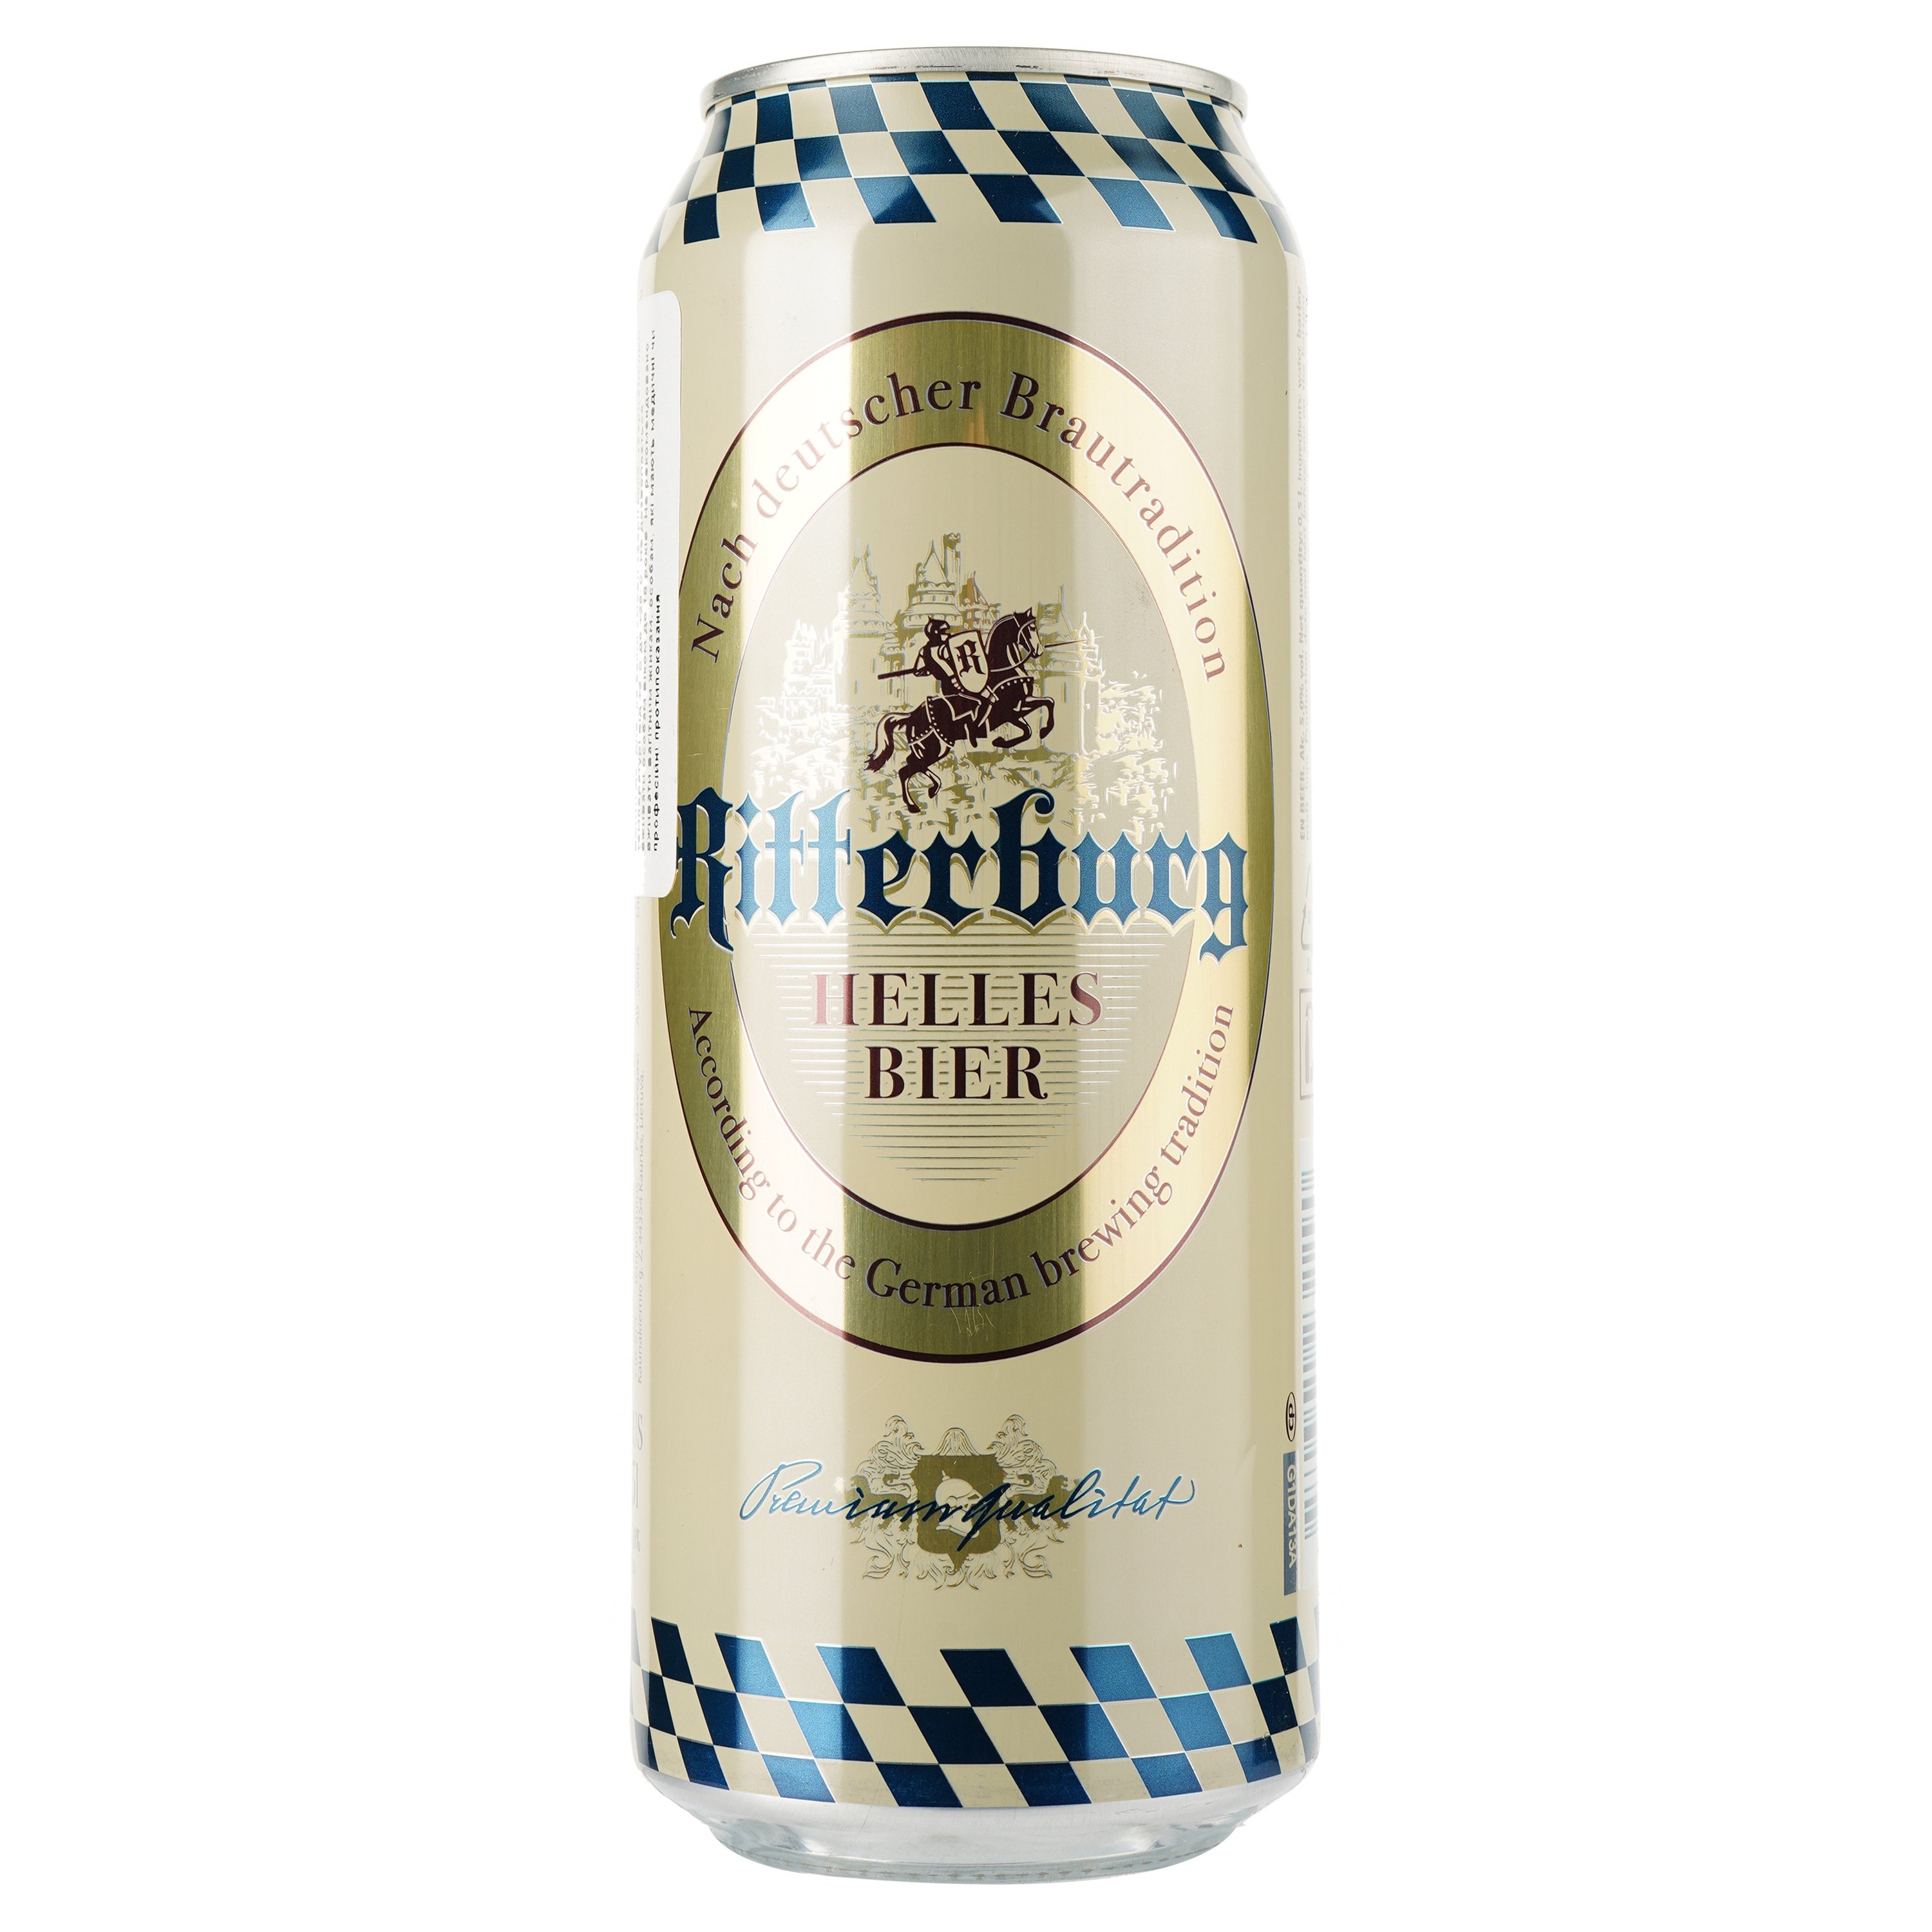 Пиво Ritterburg світле, 5%, з/б, 0.5 л - фото 1